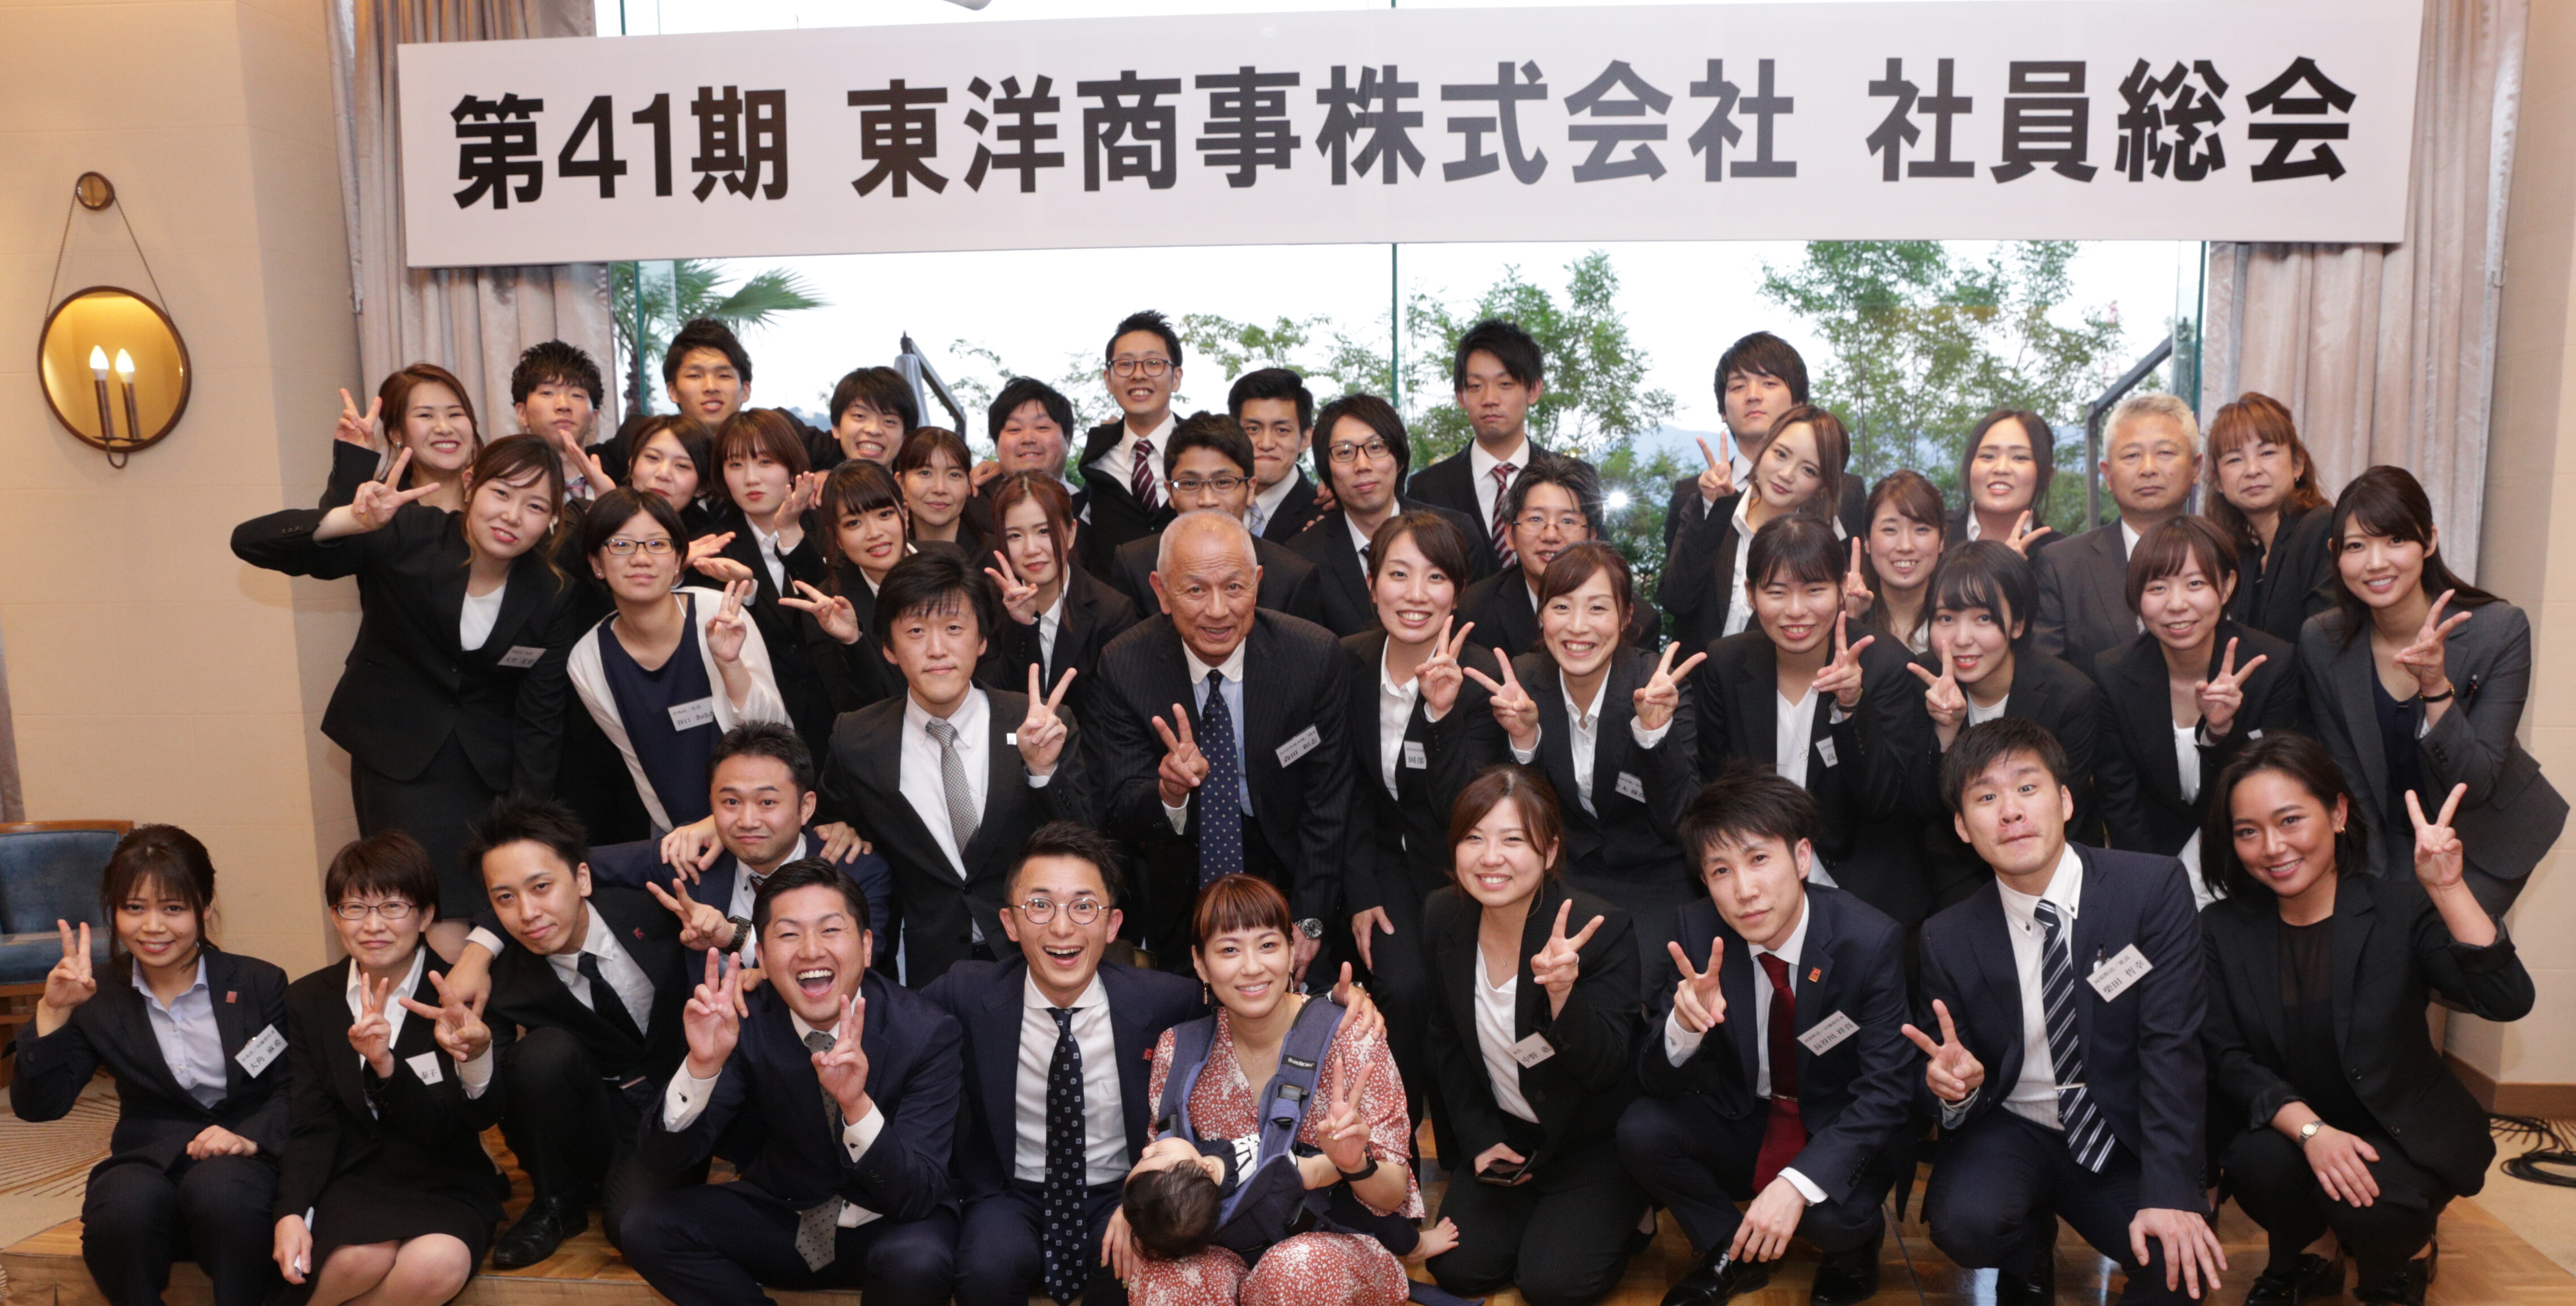 アミューズメント お客様満足度 社員満足度 地域貢献度 で 広島で業界no 1の会社になるために 船井総合研究所